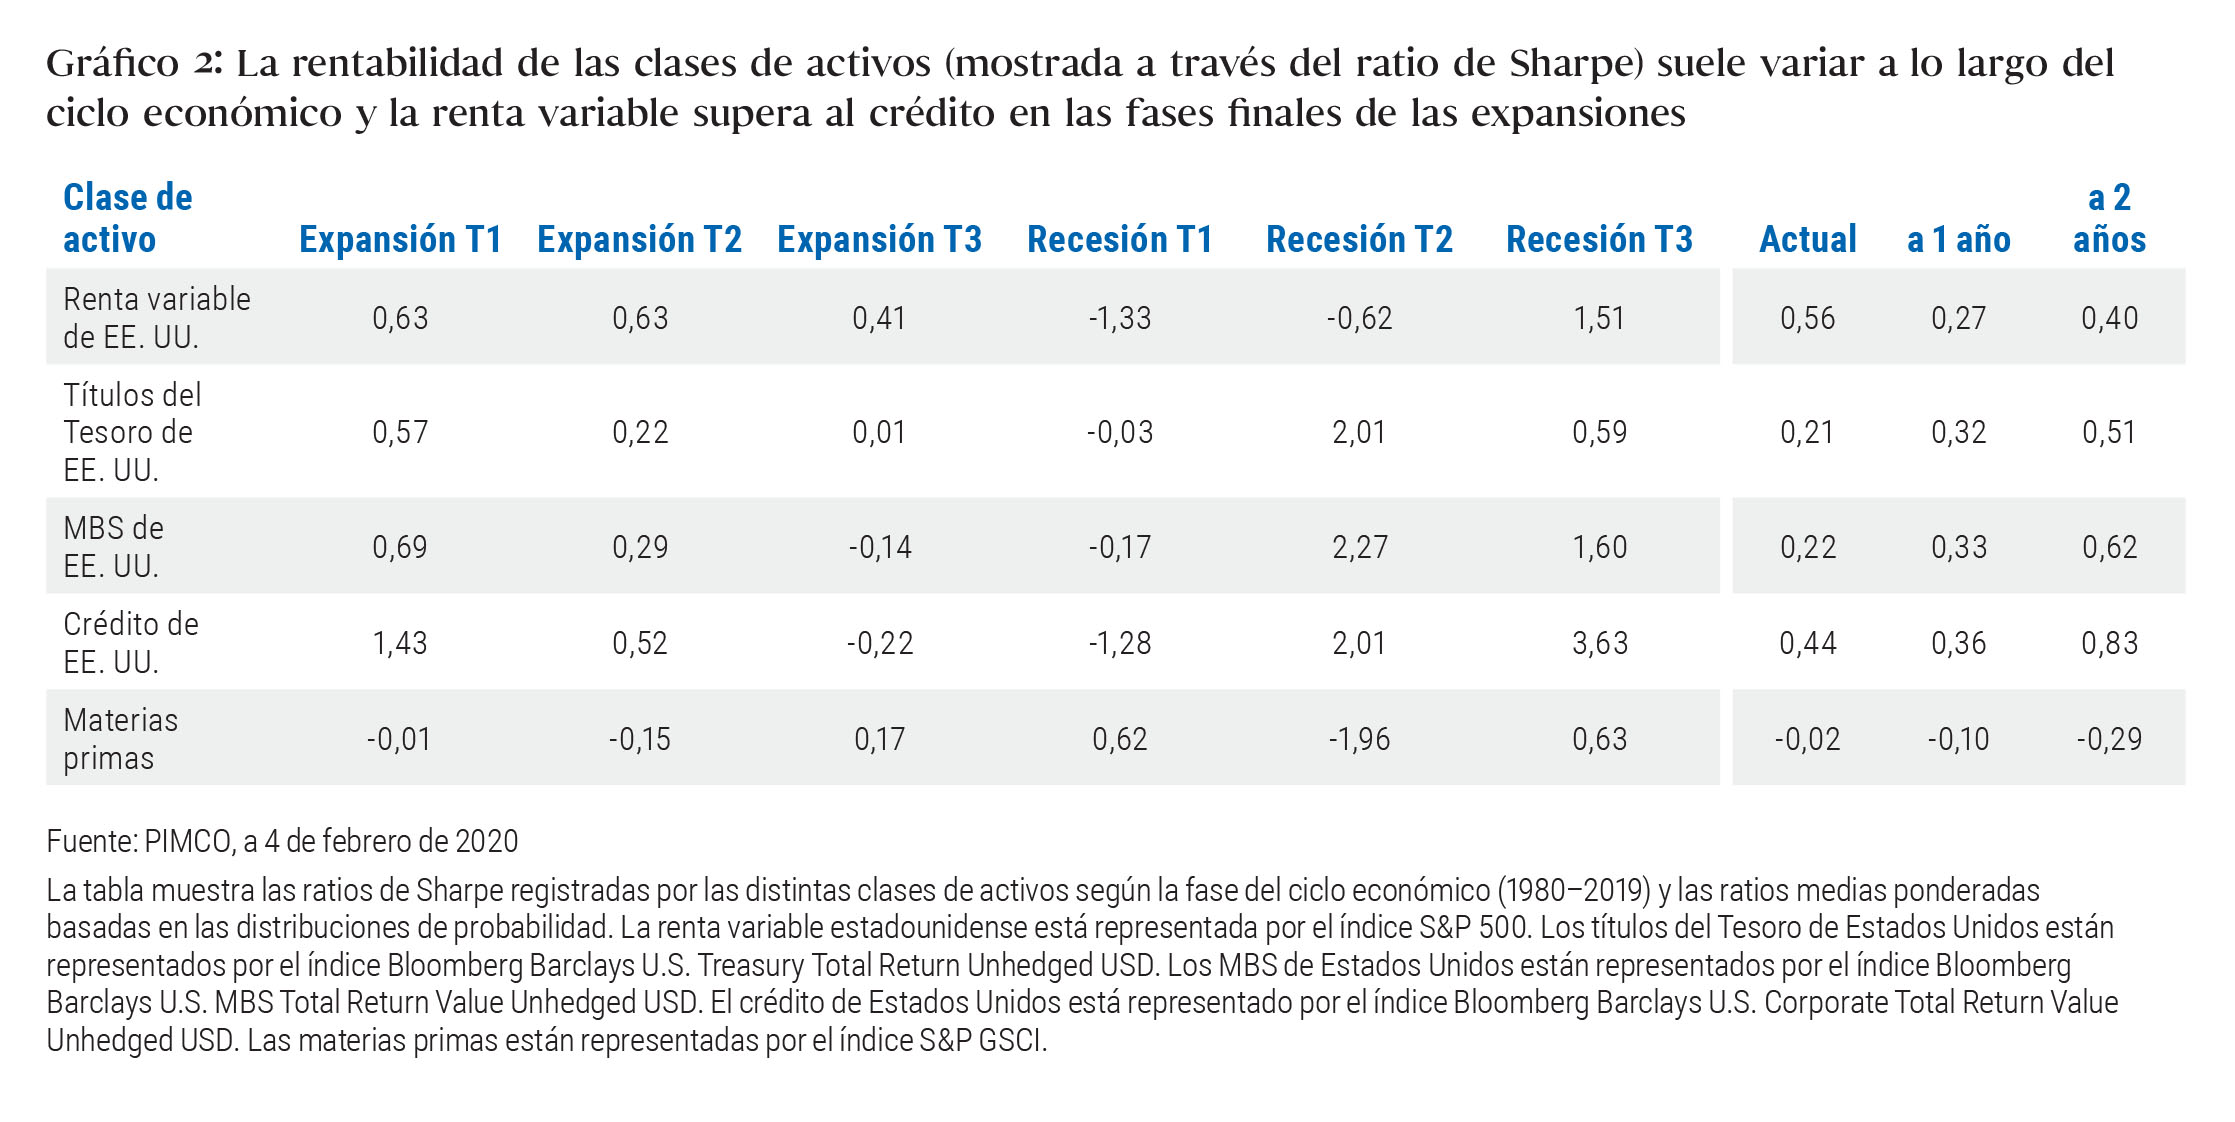 Gráfico 2: La rentabilidad de las clases de activos (mostrada a través del ratio de Sharpe) suele variar a lo largo del ciclo económico y la renta variable supera al crédito en las fases finales de las expansiones